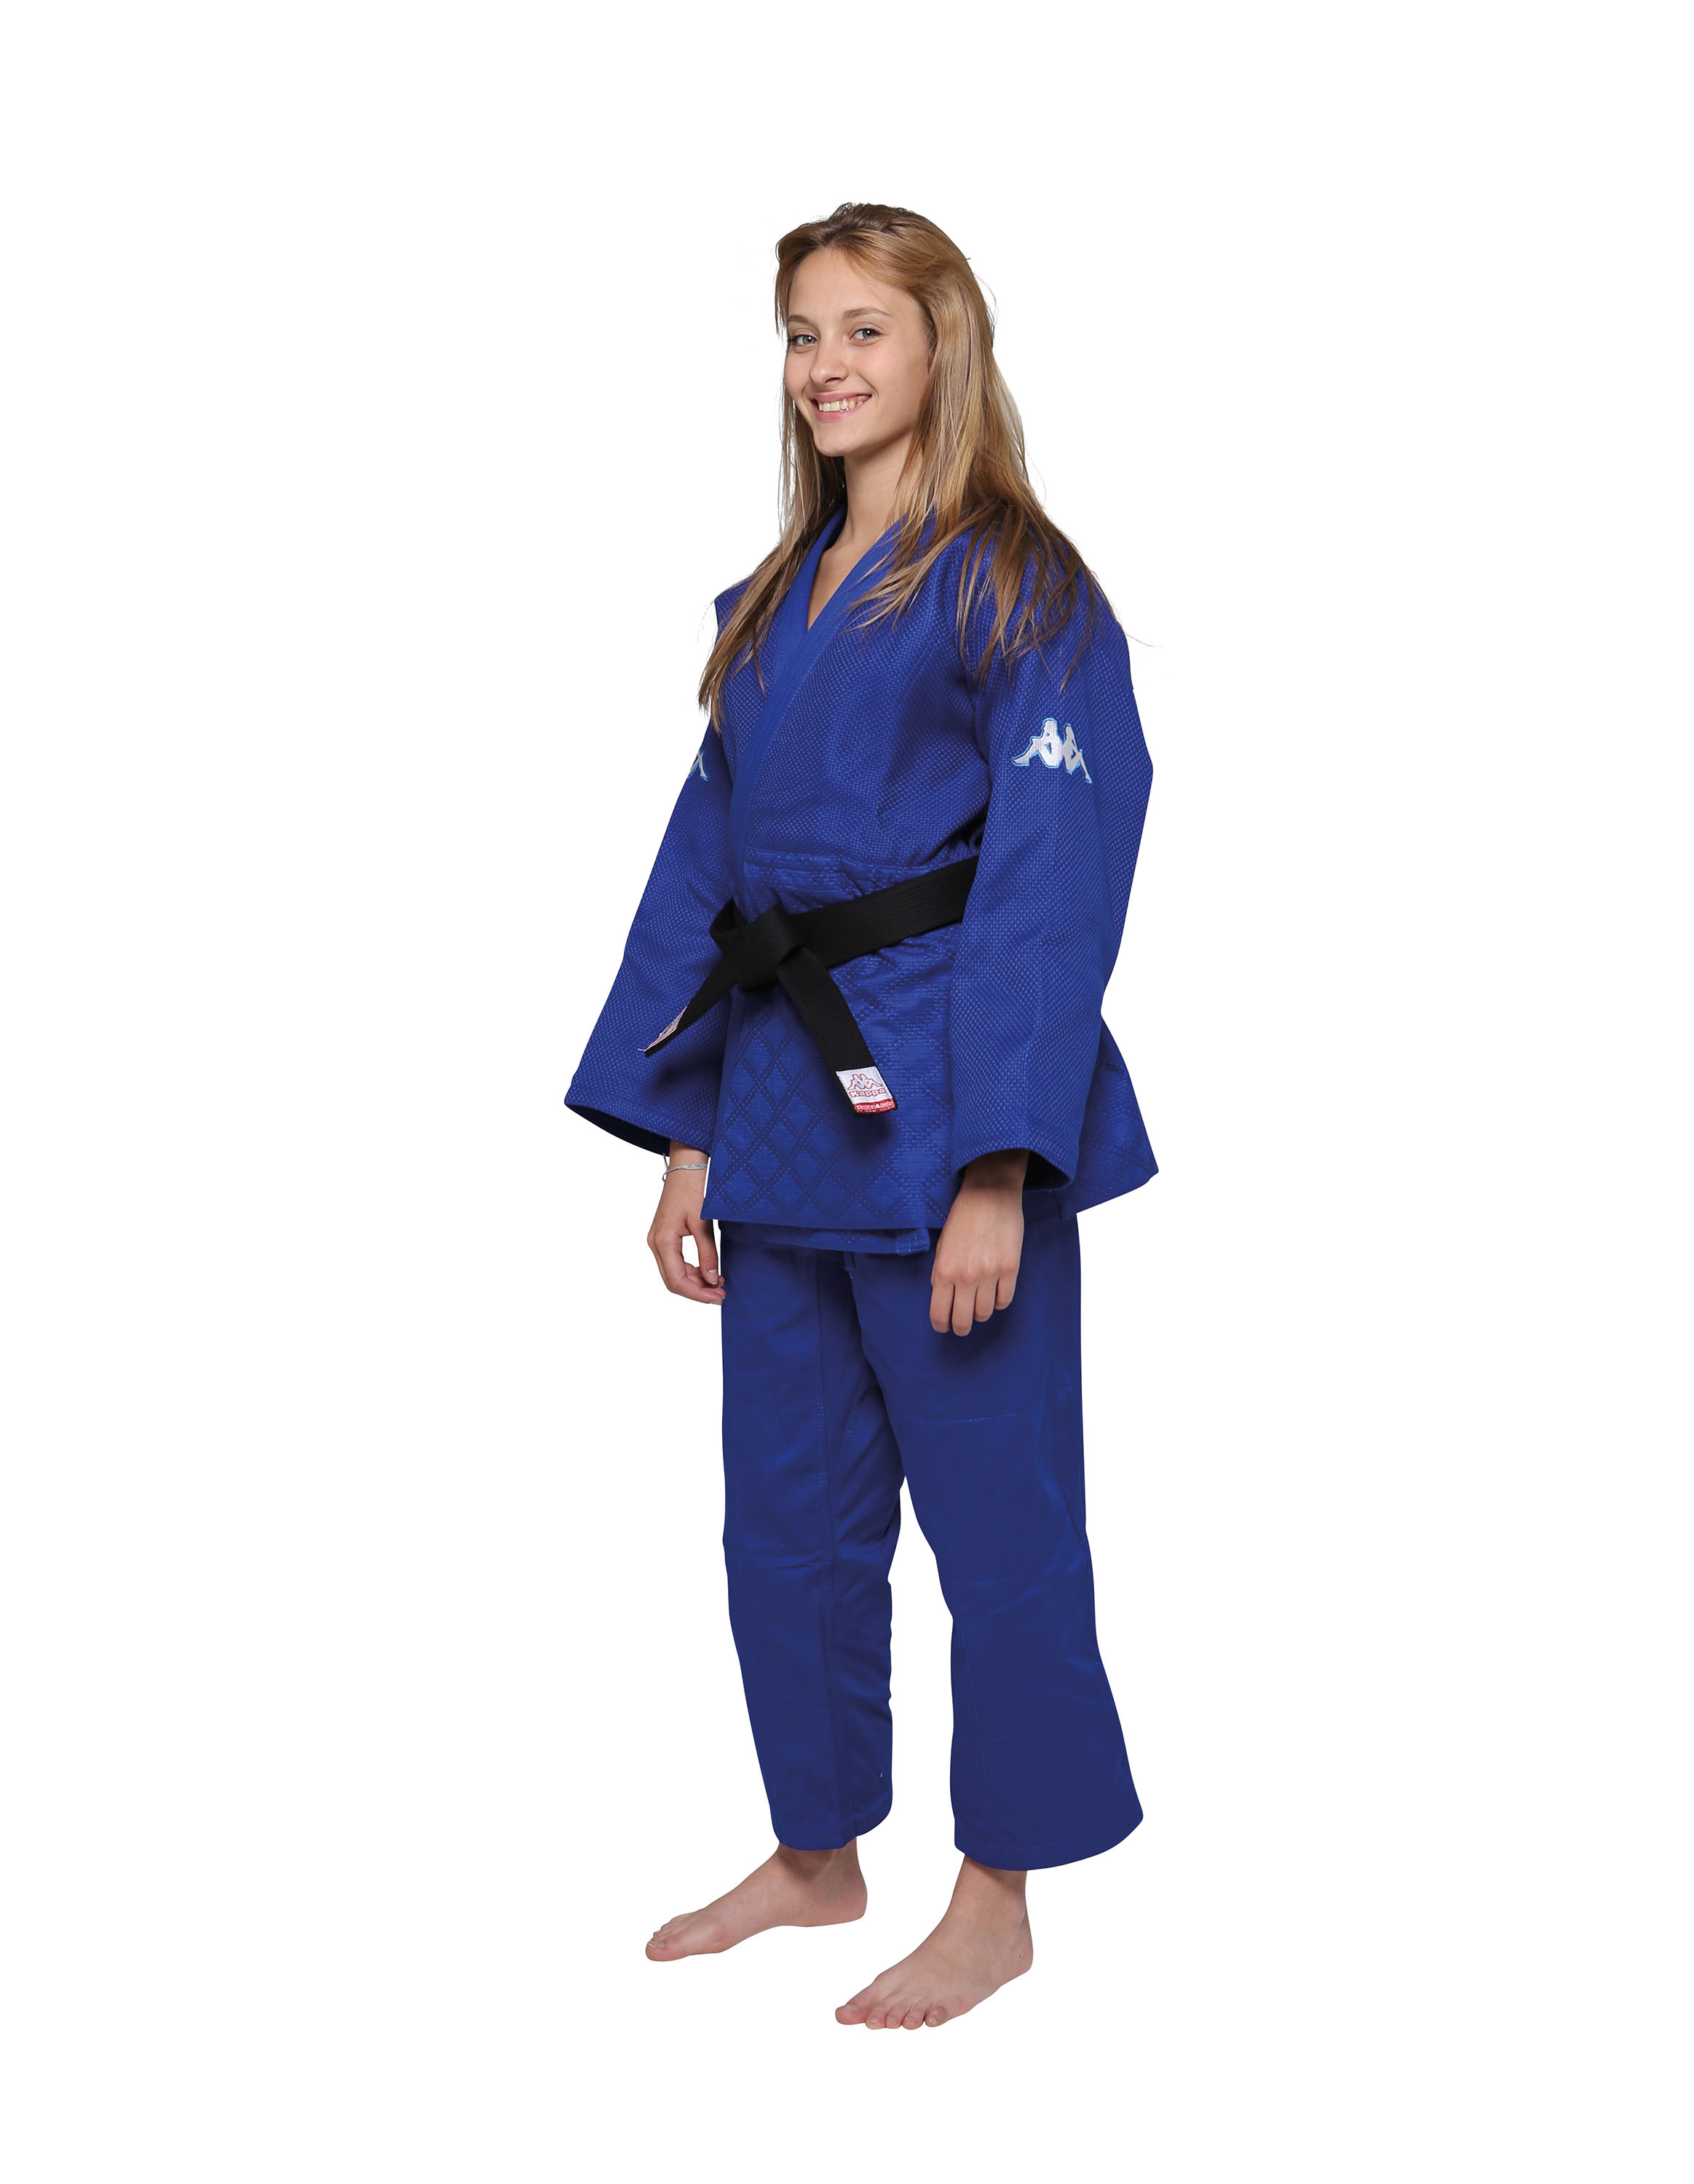 Judogui (kimono de Judo) Atlanta - azul